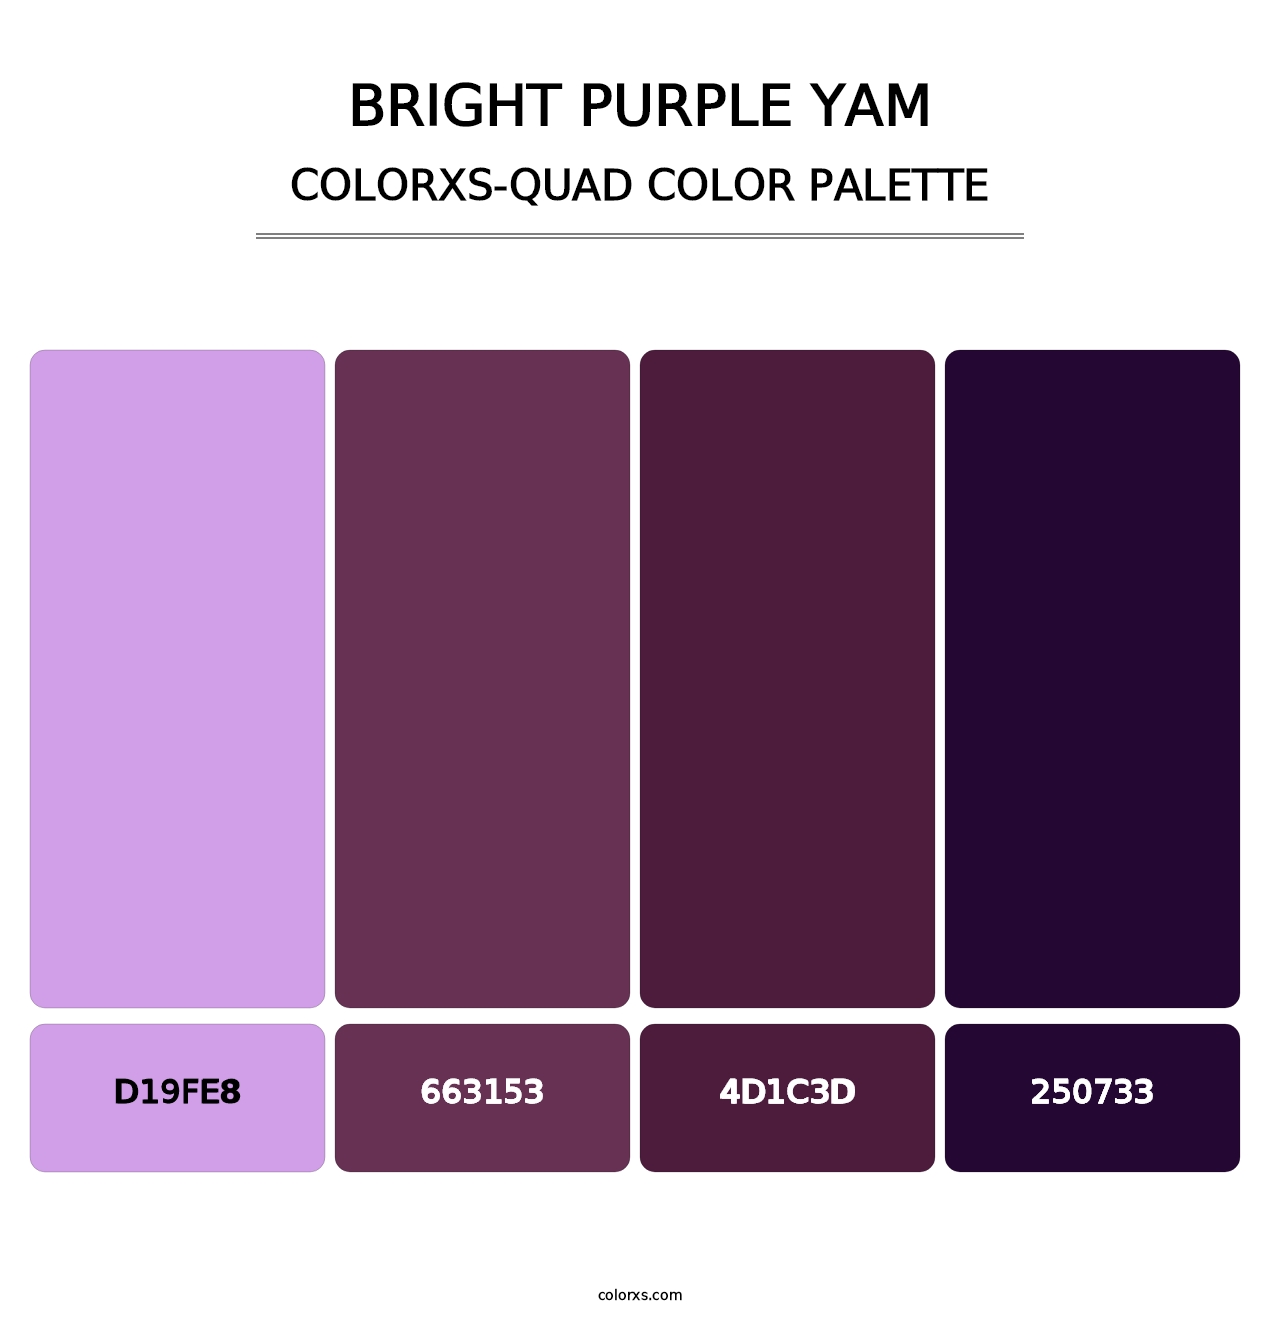 Bright Purple Yam - Colorxs Quad Palette